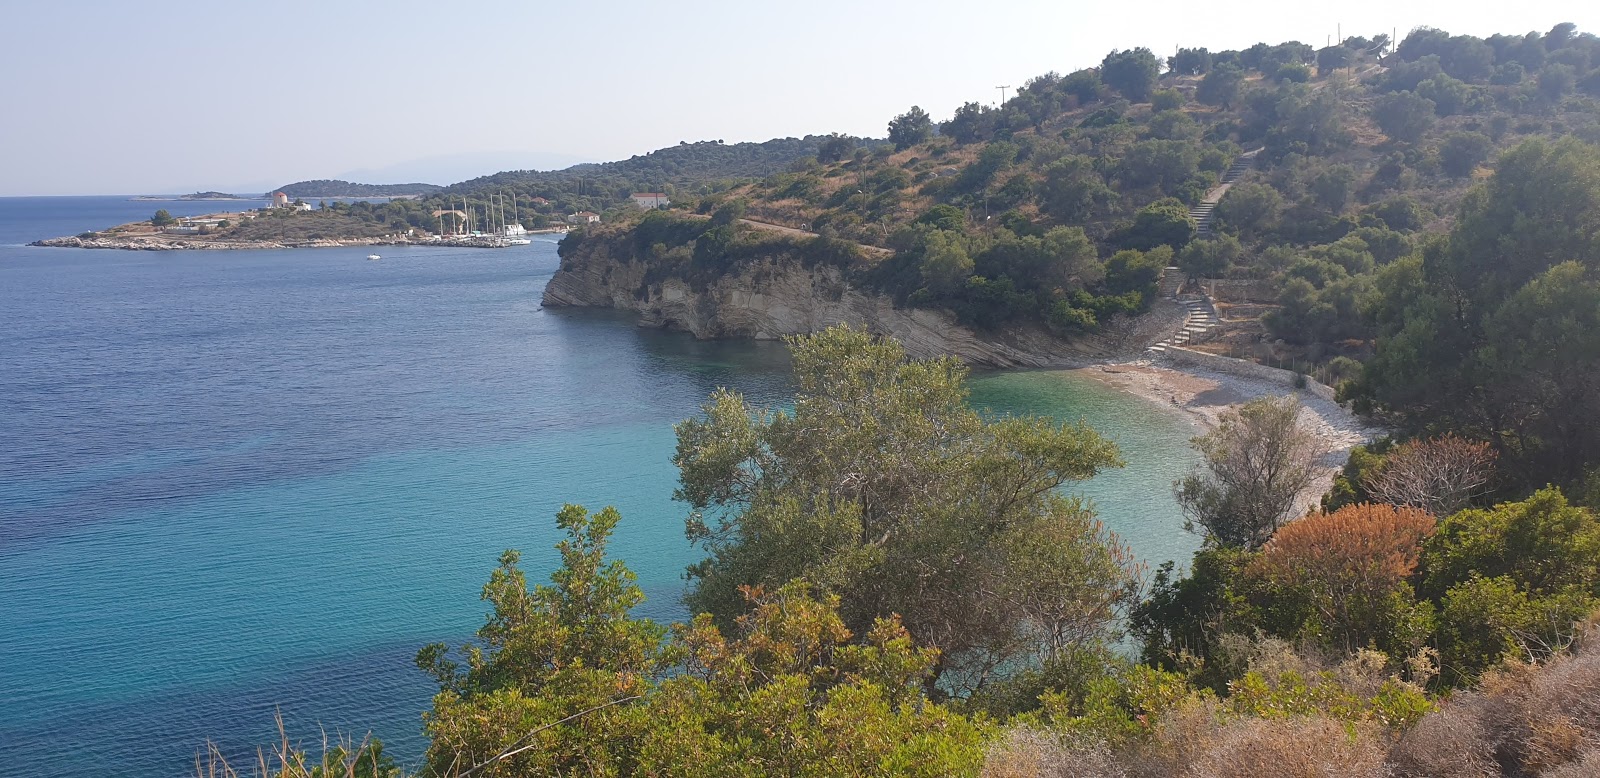 Fotografie cu Kastos beach cu o suprafață de apă verde deschis